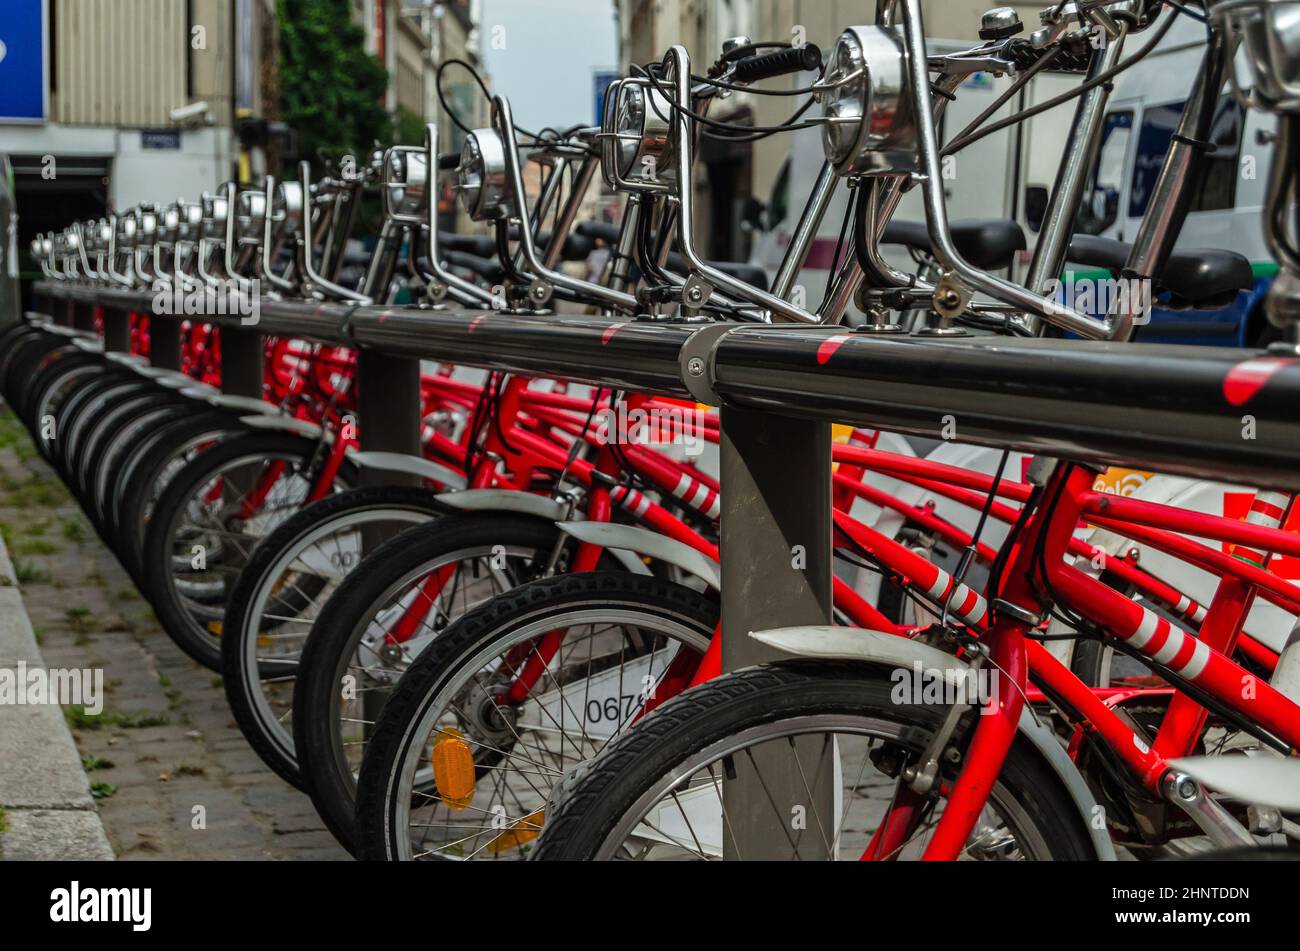 ANVERSA, BELGIO - 22 AGOSTO 2013: Fila di biciclette della società velo, un servizio di condivisione di biciclette ad Anversa, Belgio Foto Stock